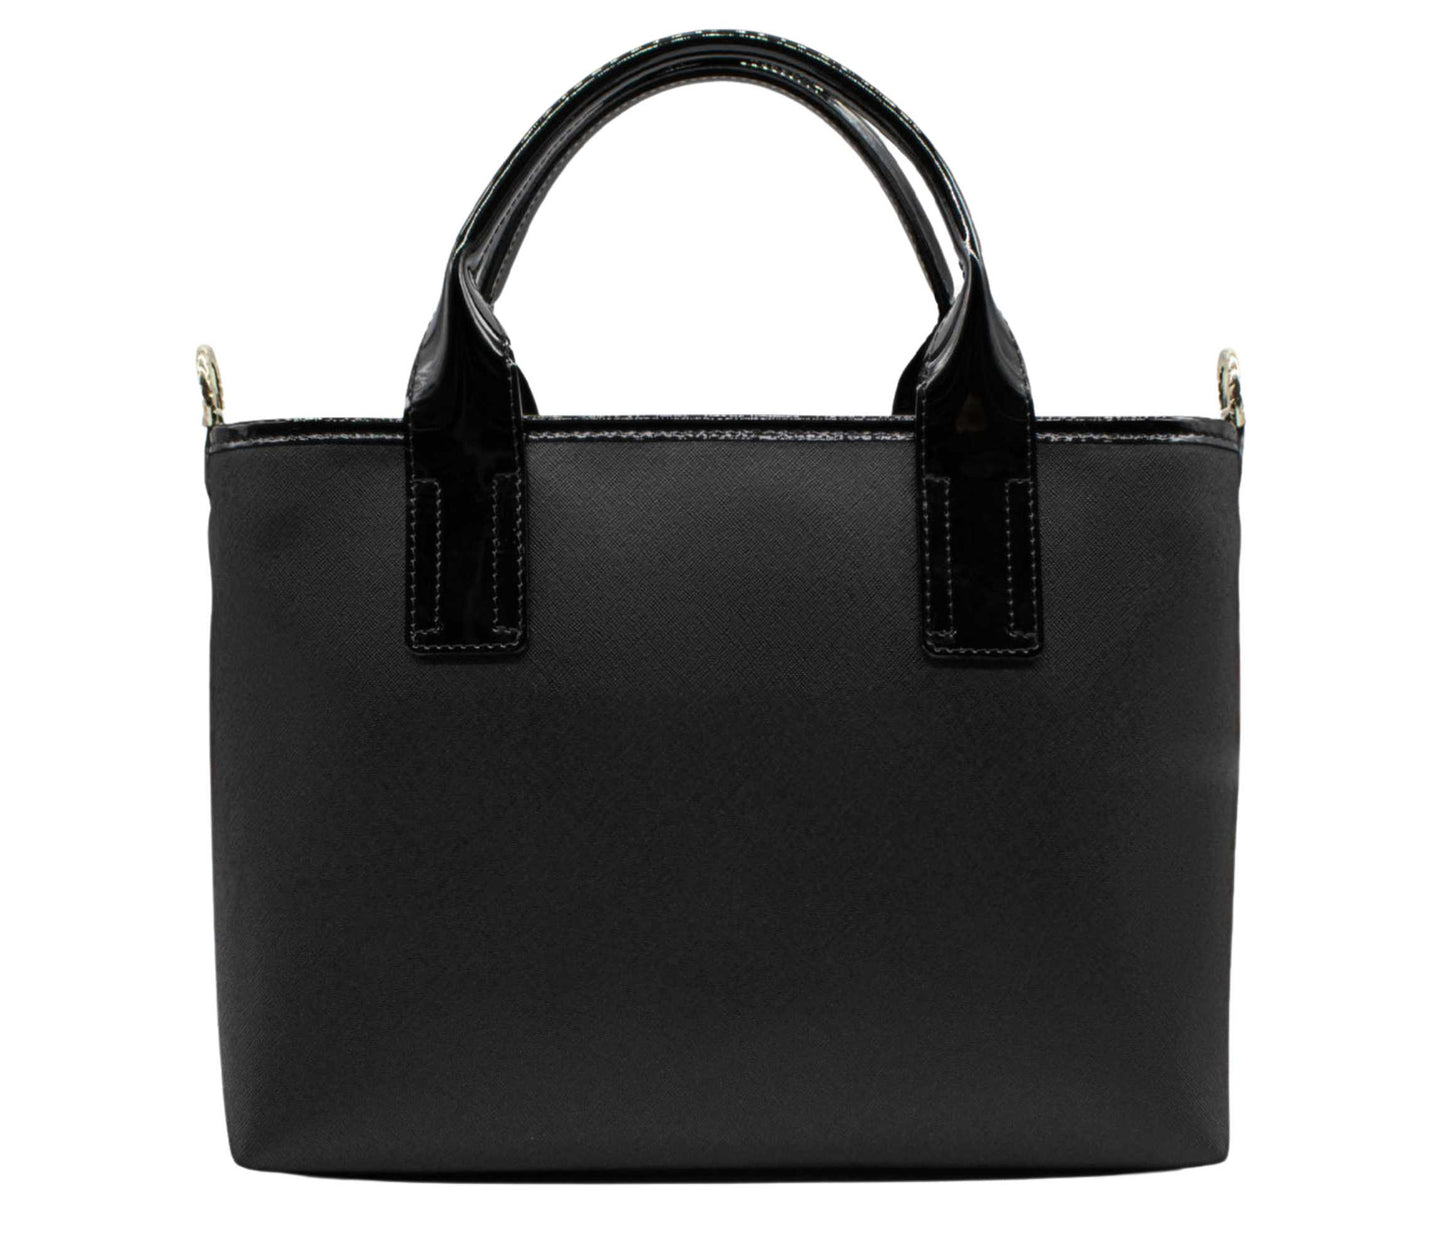 Cavalinho Royal Handbag - Black and White - 18390493.21.99_3